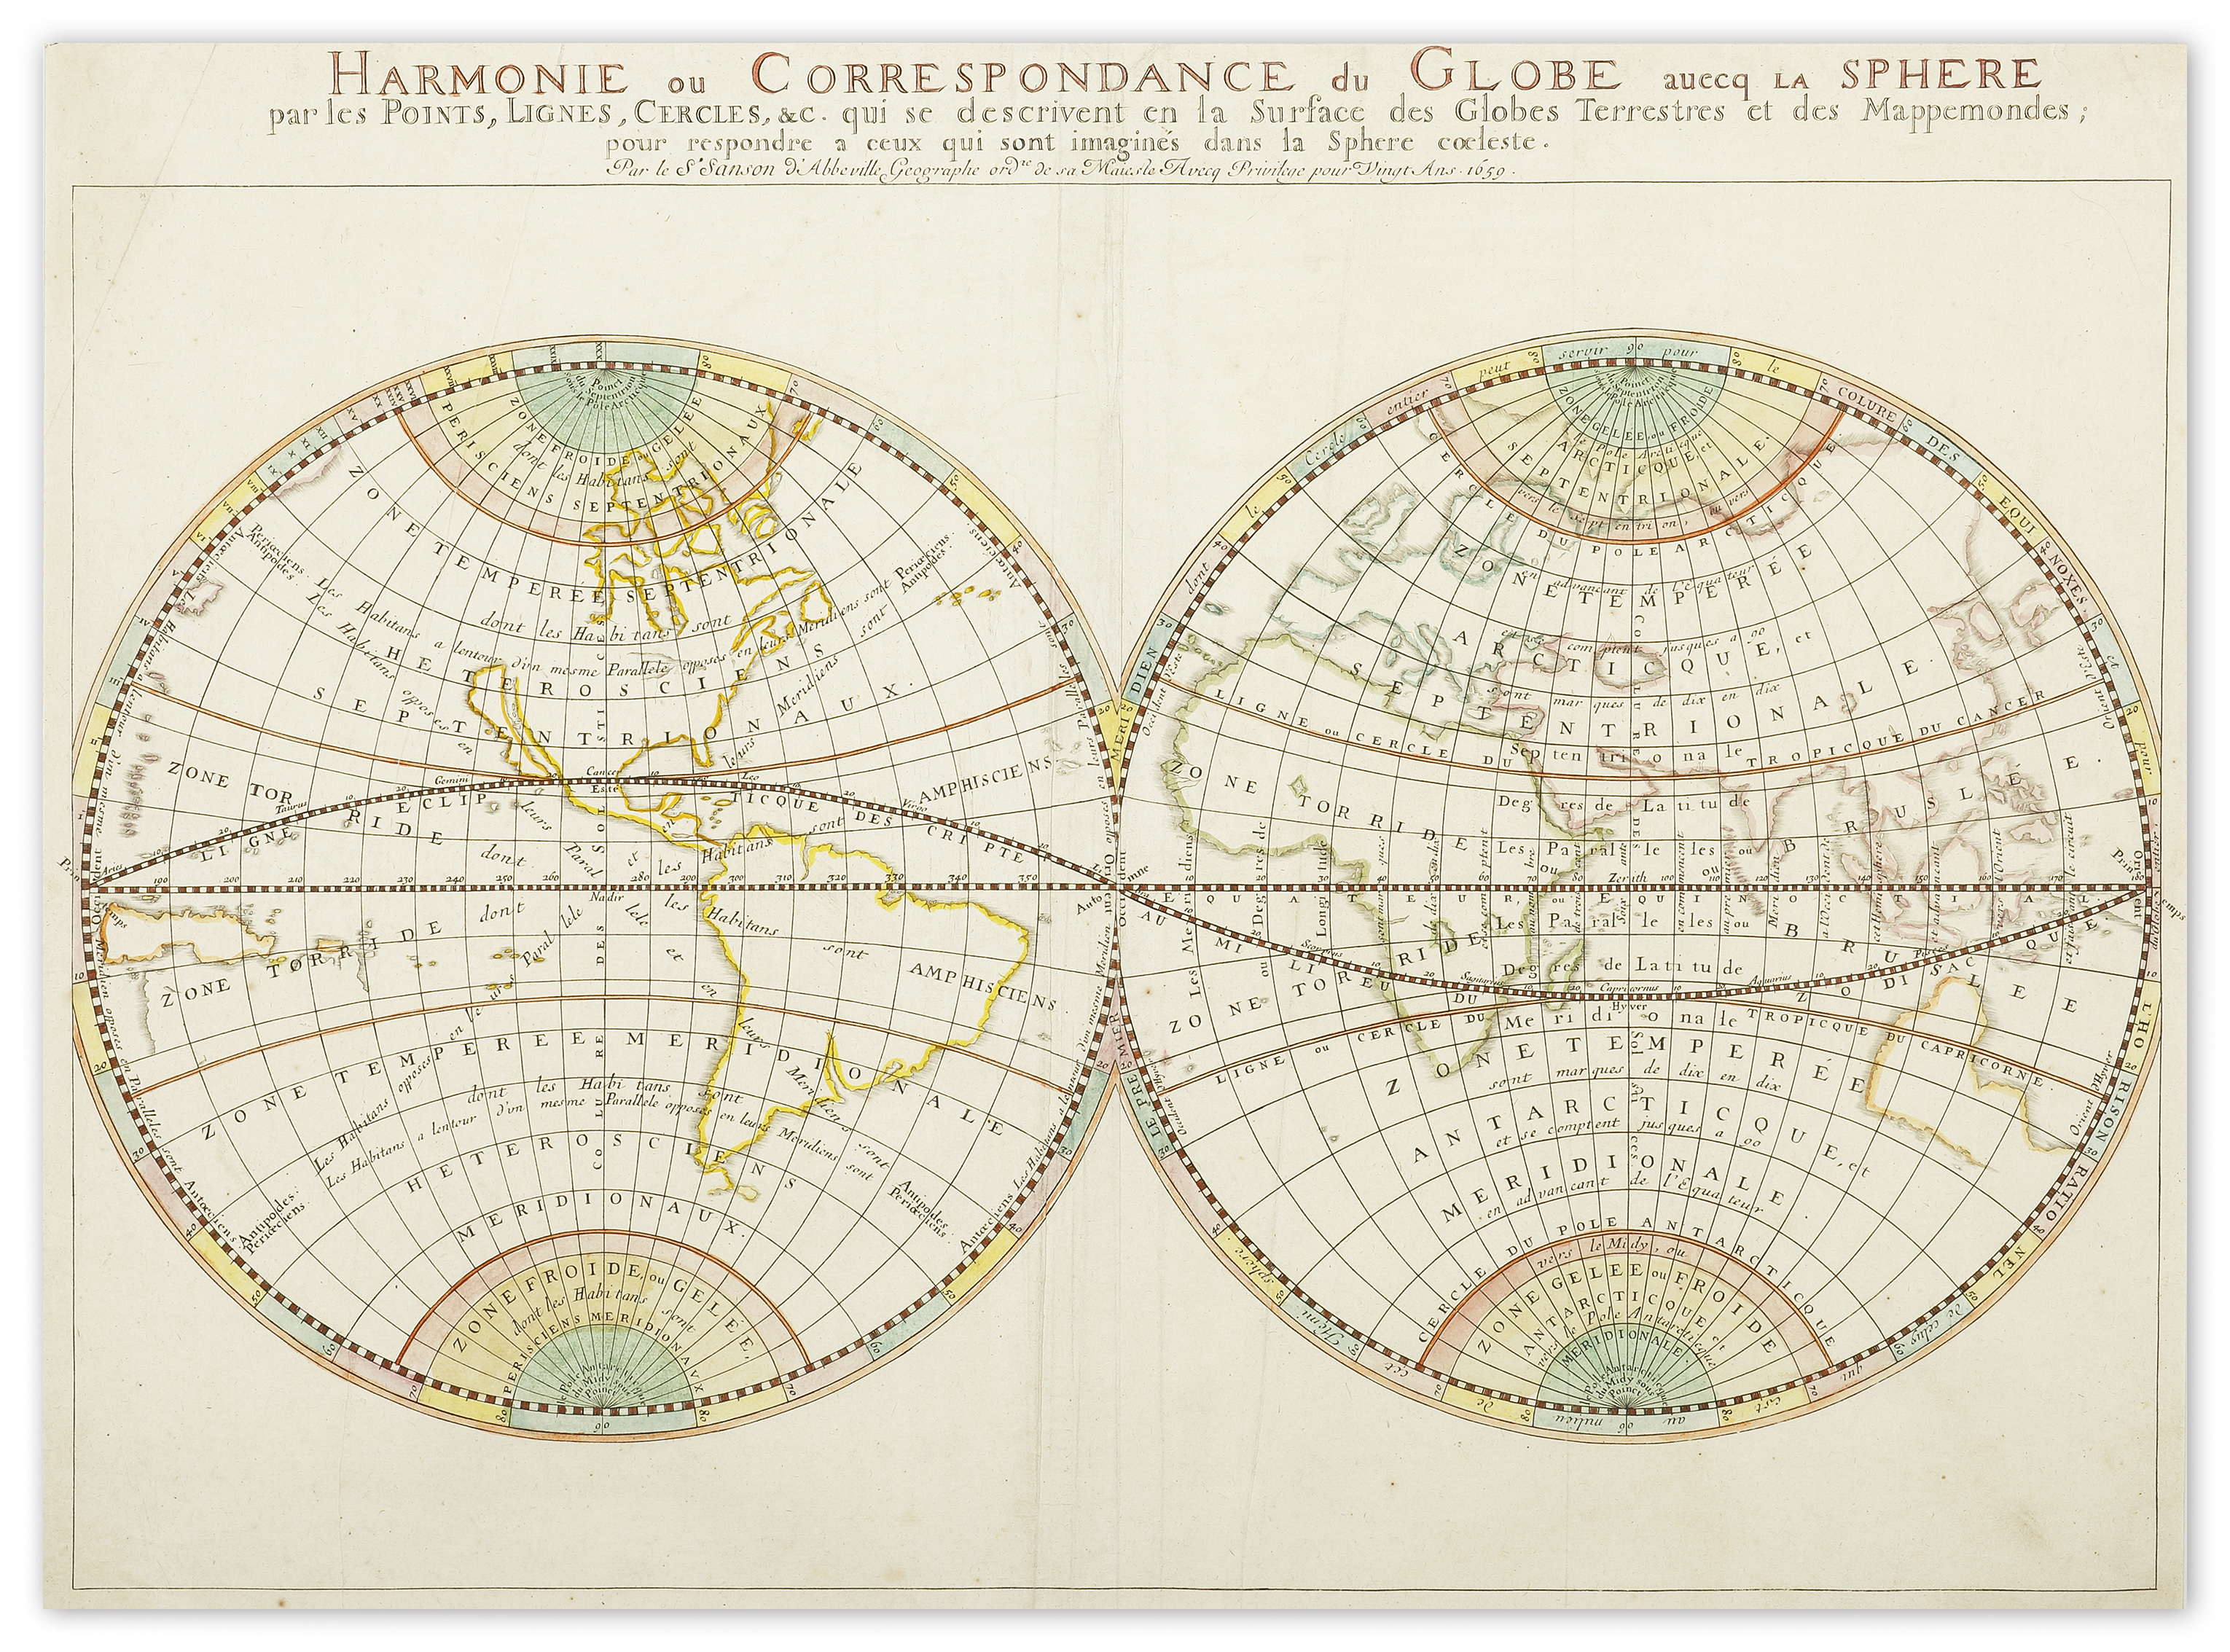 Harmonie ou Correspondance du Globe avecq la Sphere pare lest Points, Lignes, Cercles - Antique Map from 1659